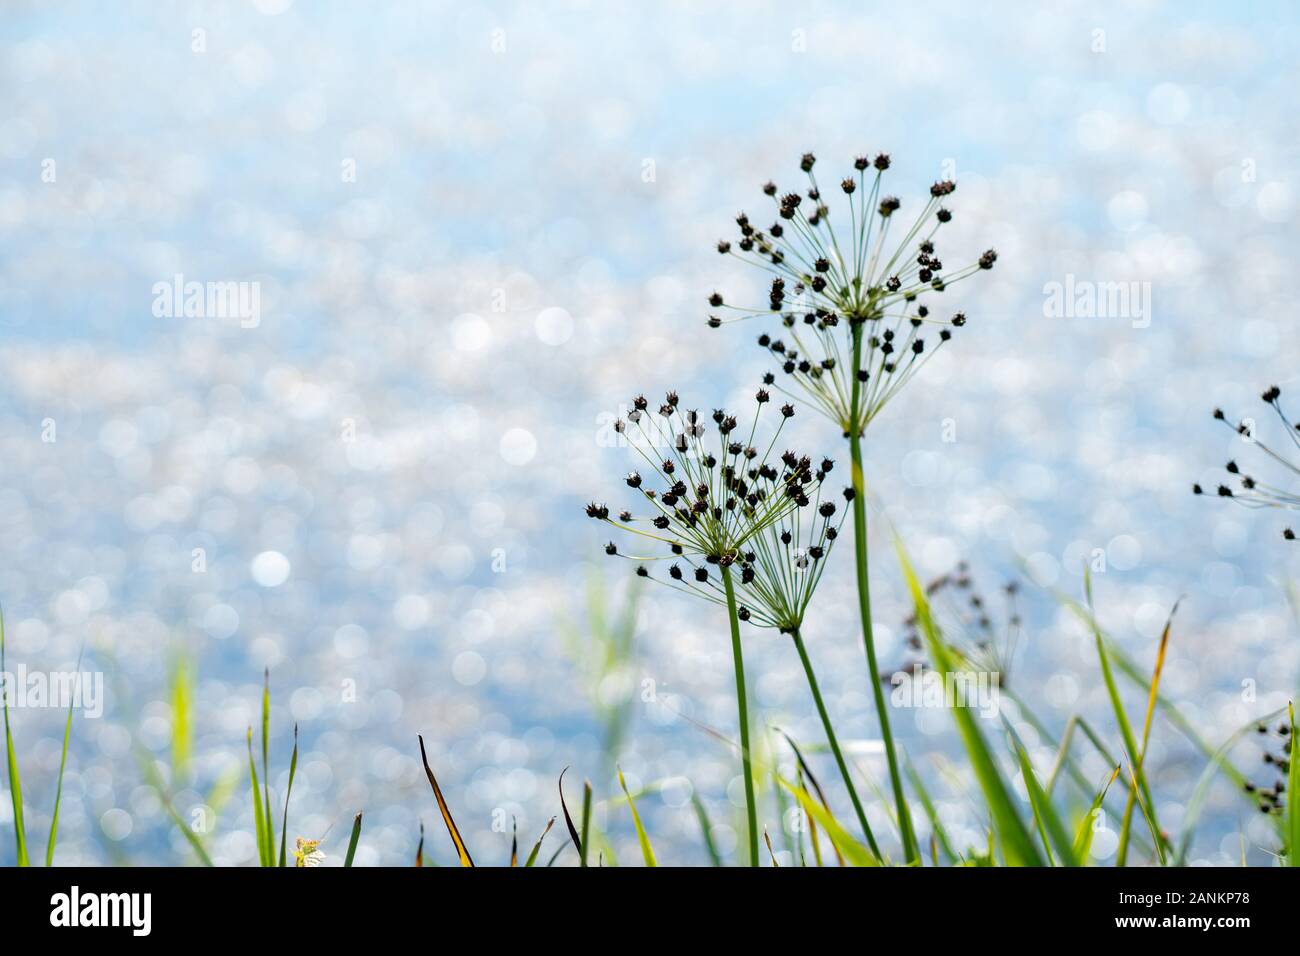 Immagine ispiratrice di wildlfower semina con acqua sfocata in background Foto Stock